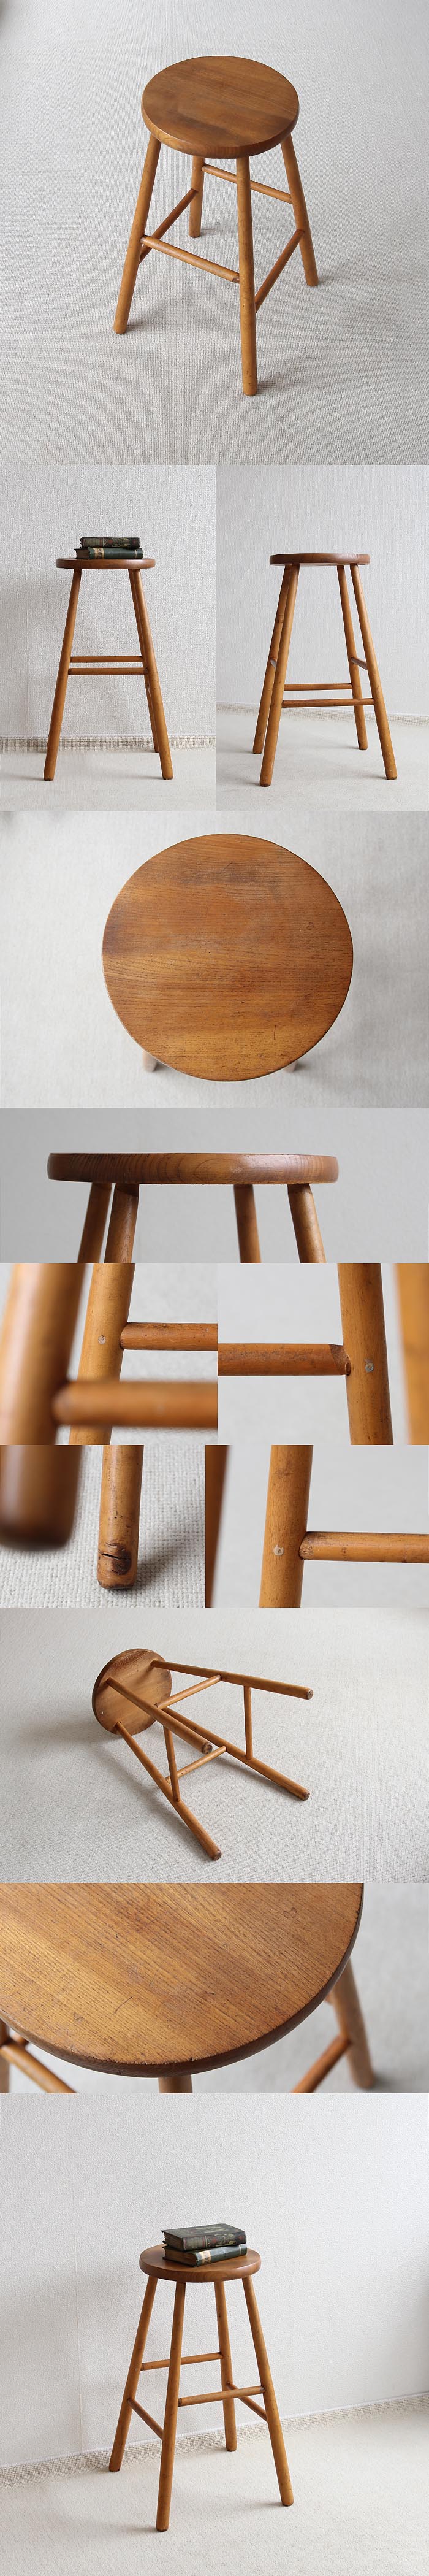 イギリス アンティーク ハイスツール 木製椅子 カントリー 無垢材 家具「花台にも」V-404